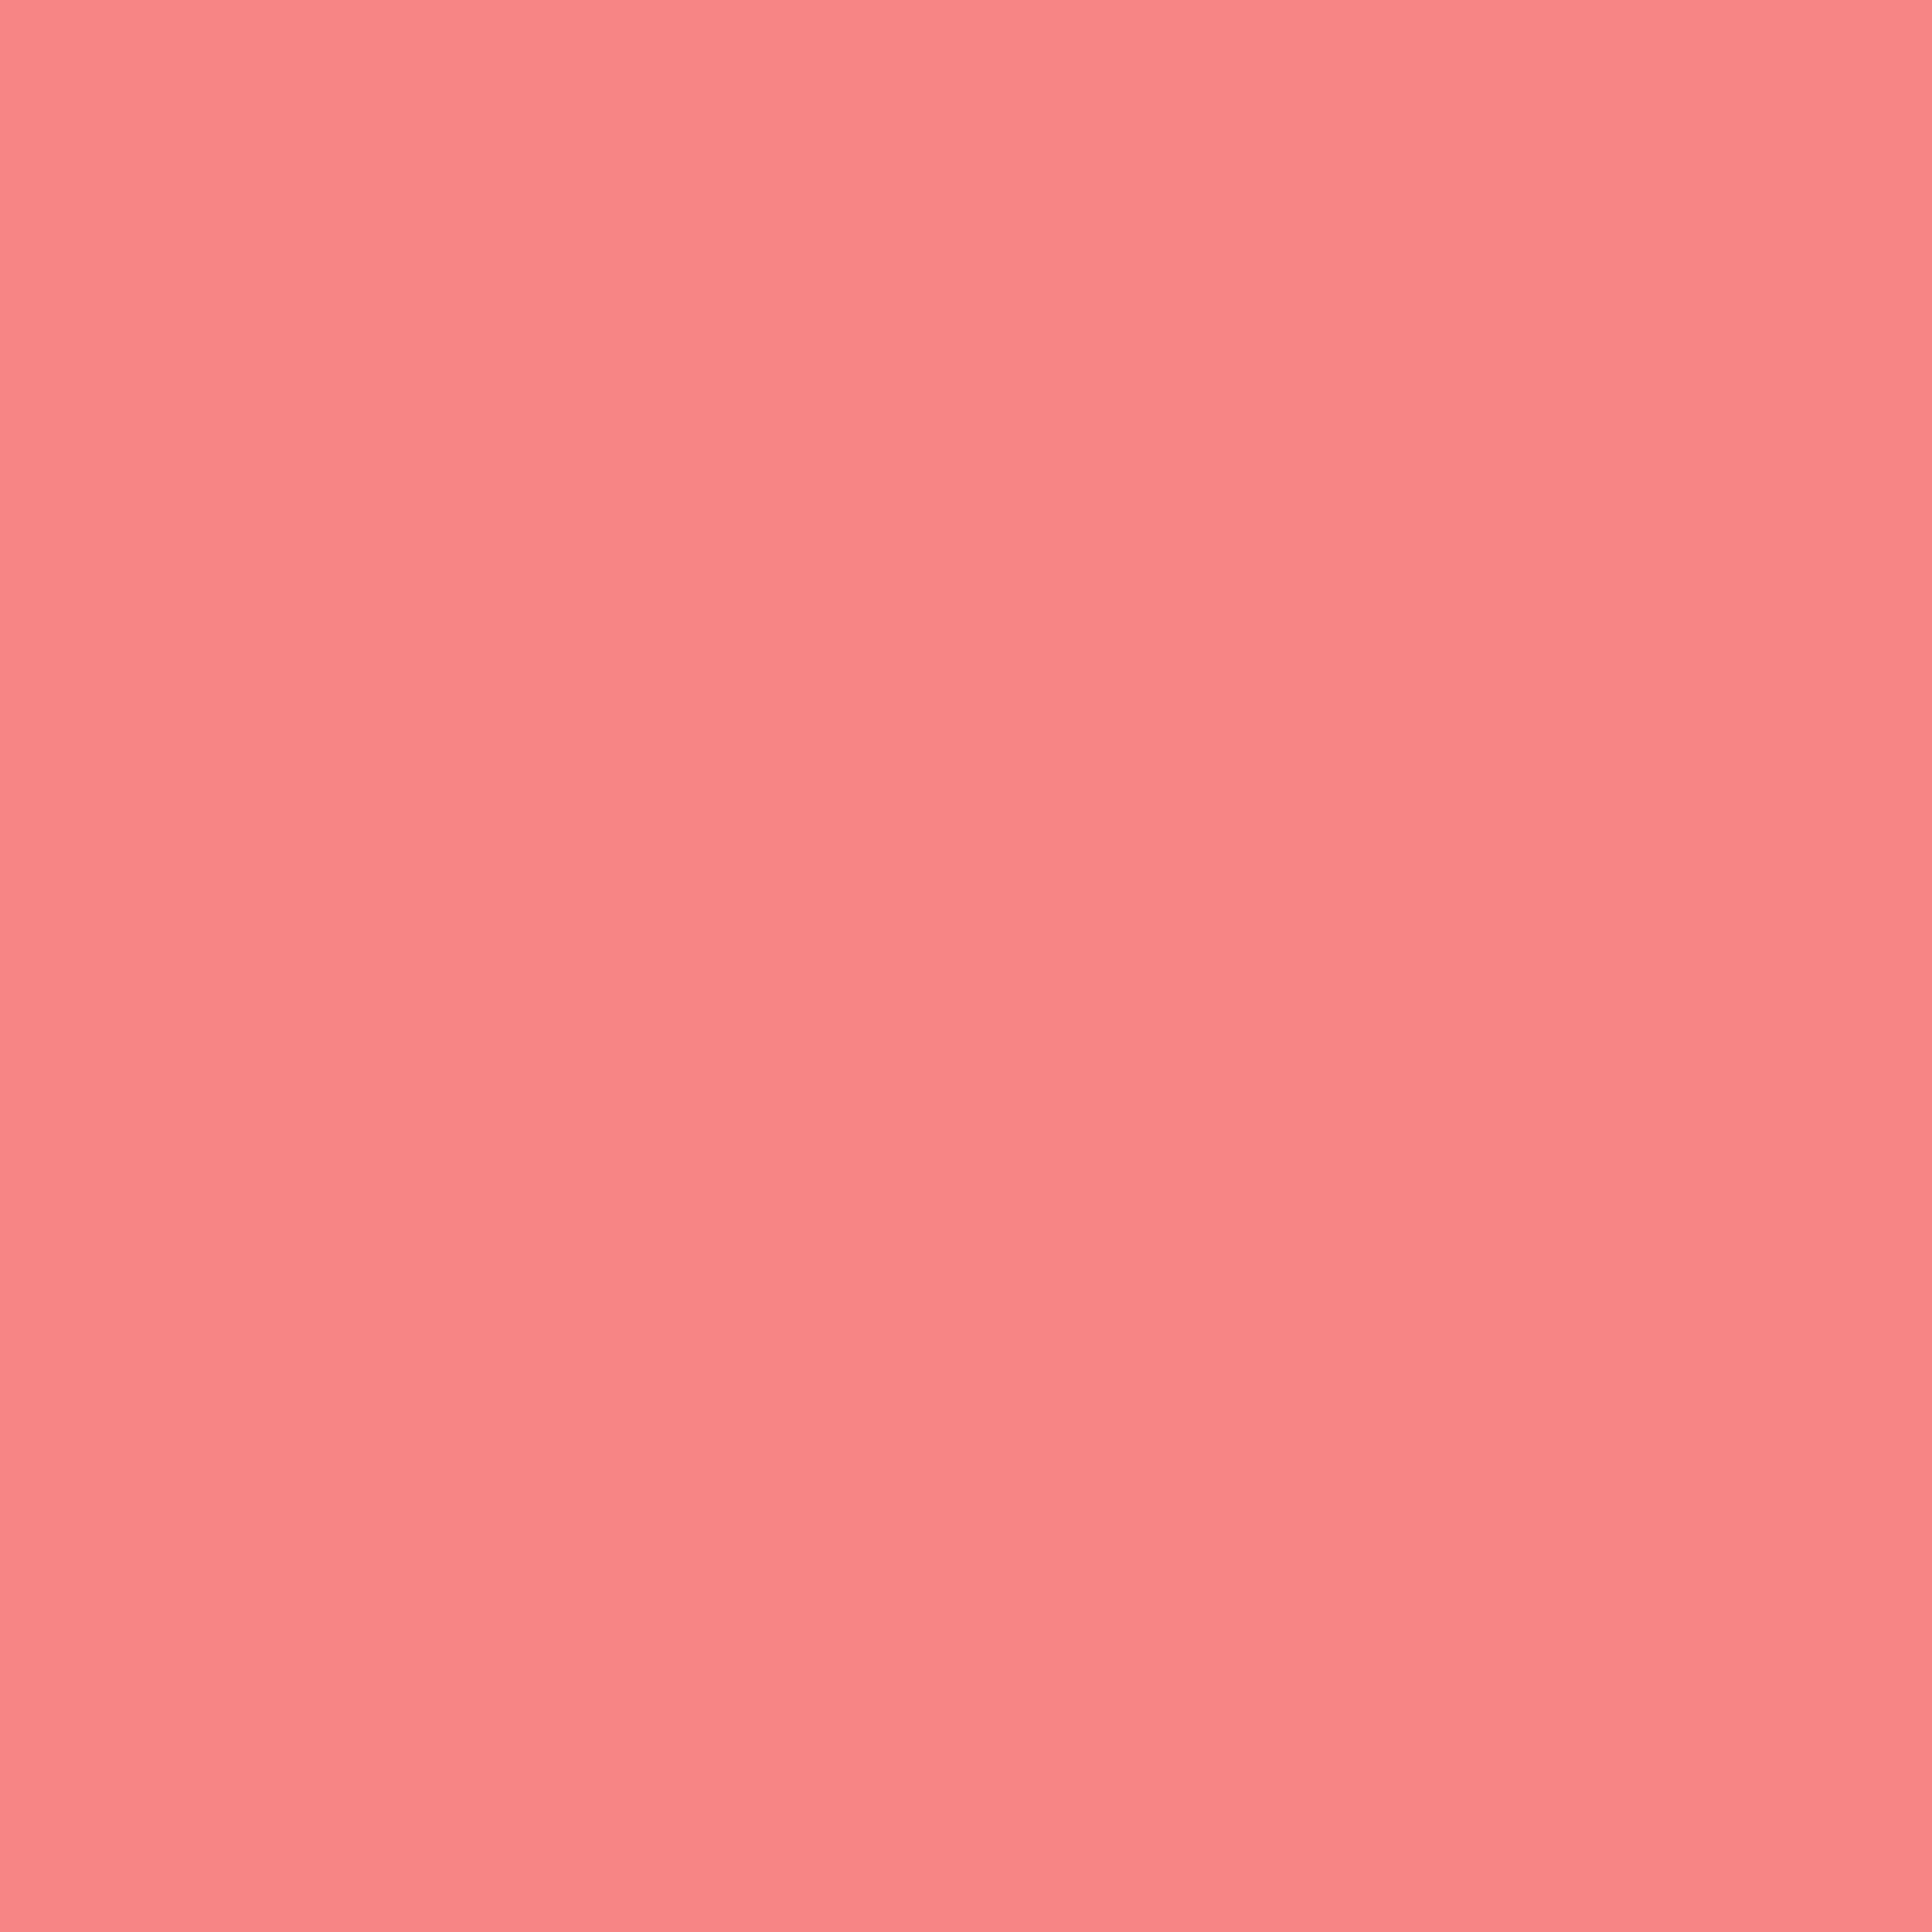 #colour_pink cotton